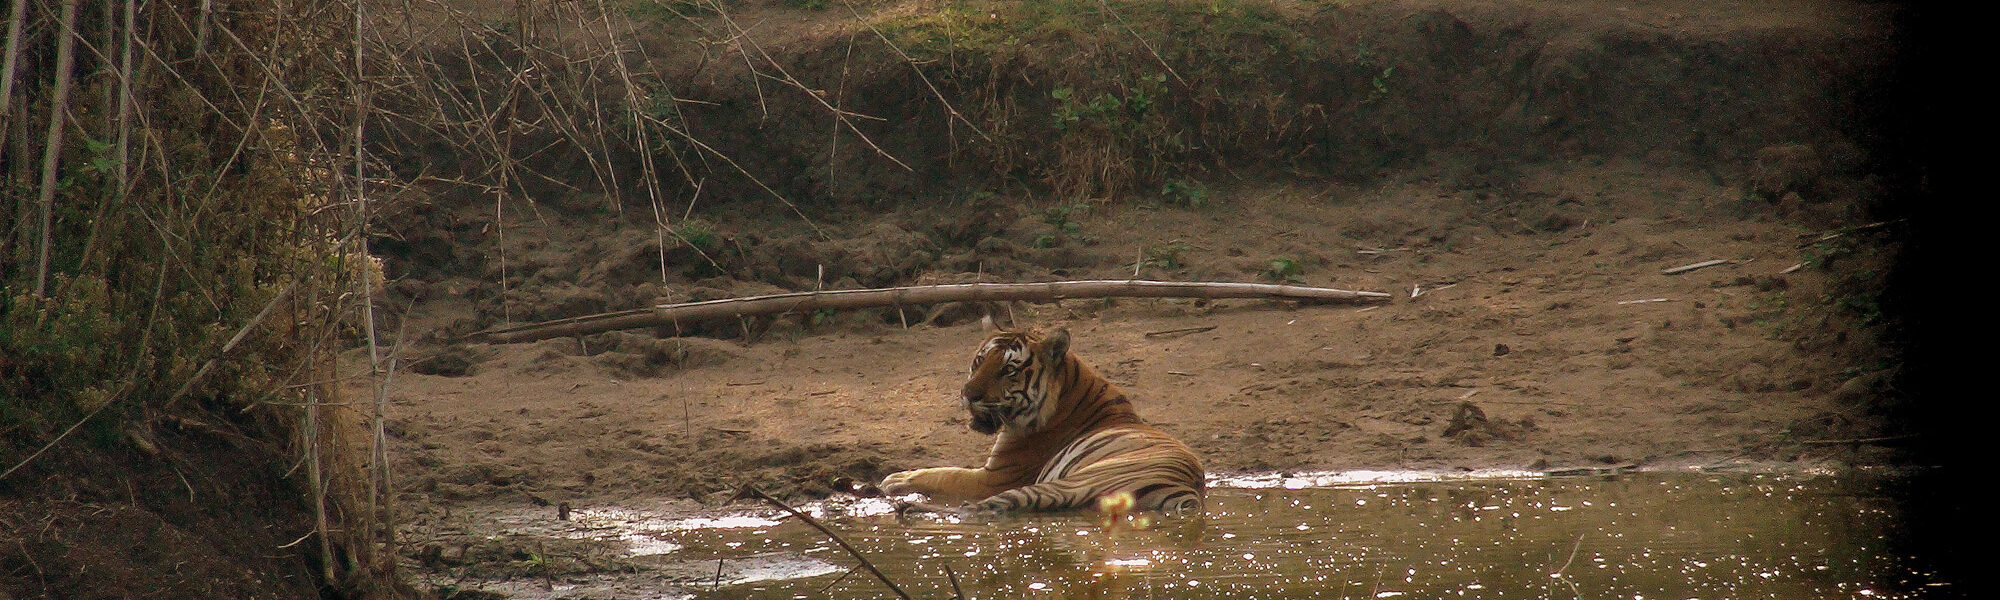 Op mijn wishlist: tijgers spotten in India